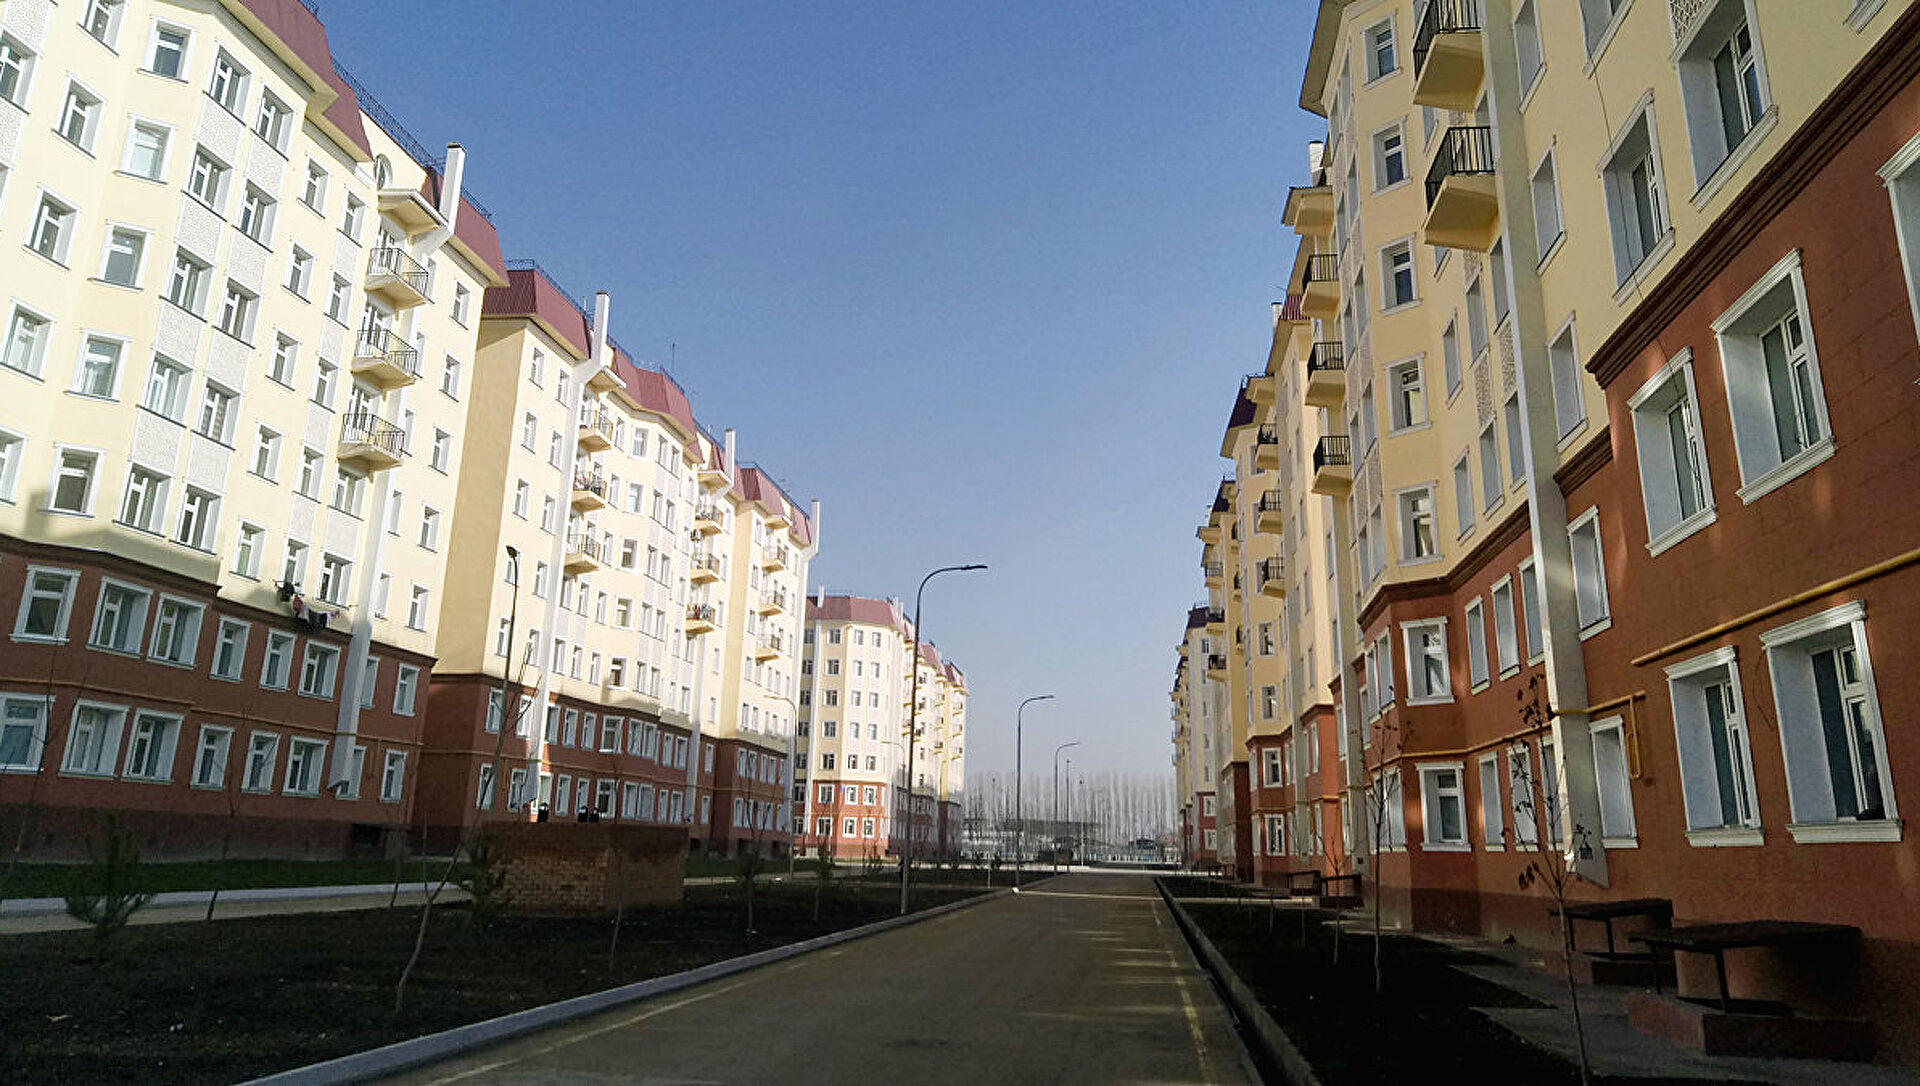 Немного о новостройках в Узбекистане: порядка 950 квартир на сумму 255 млрд сумов пустуют из-за непривлекательности местоположения или цены